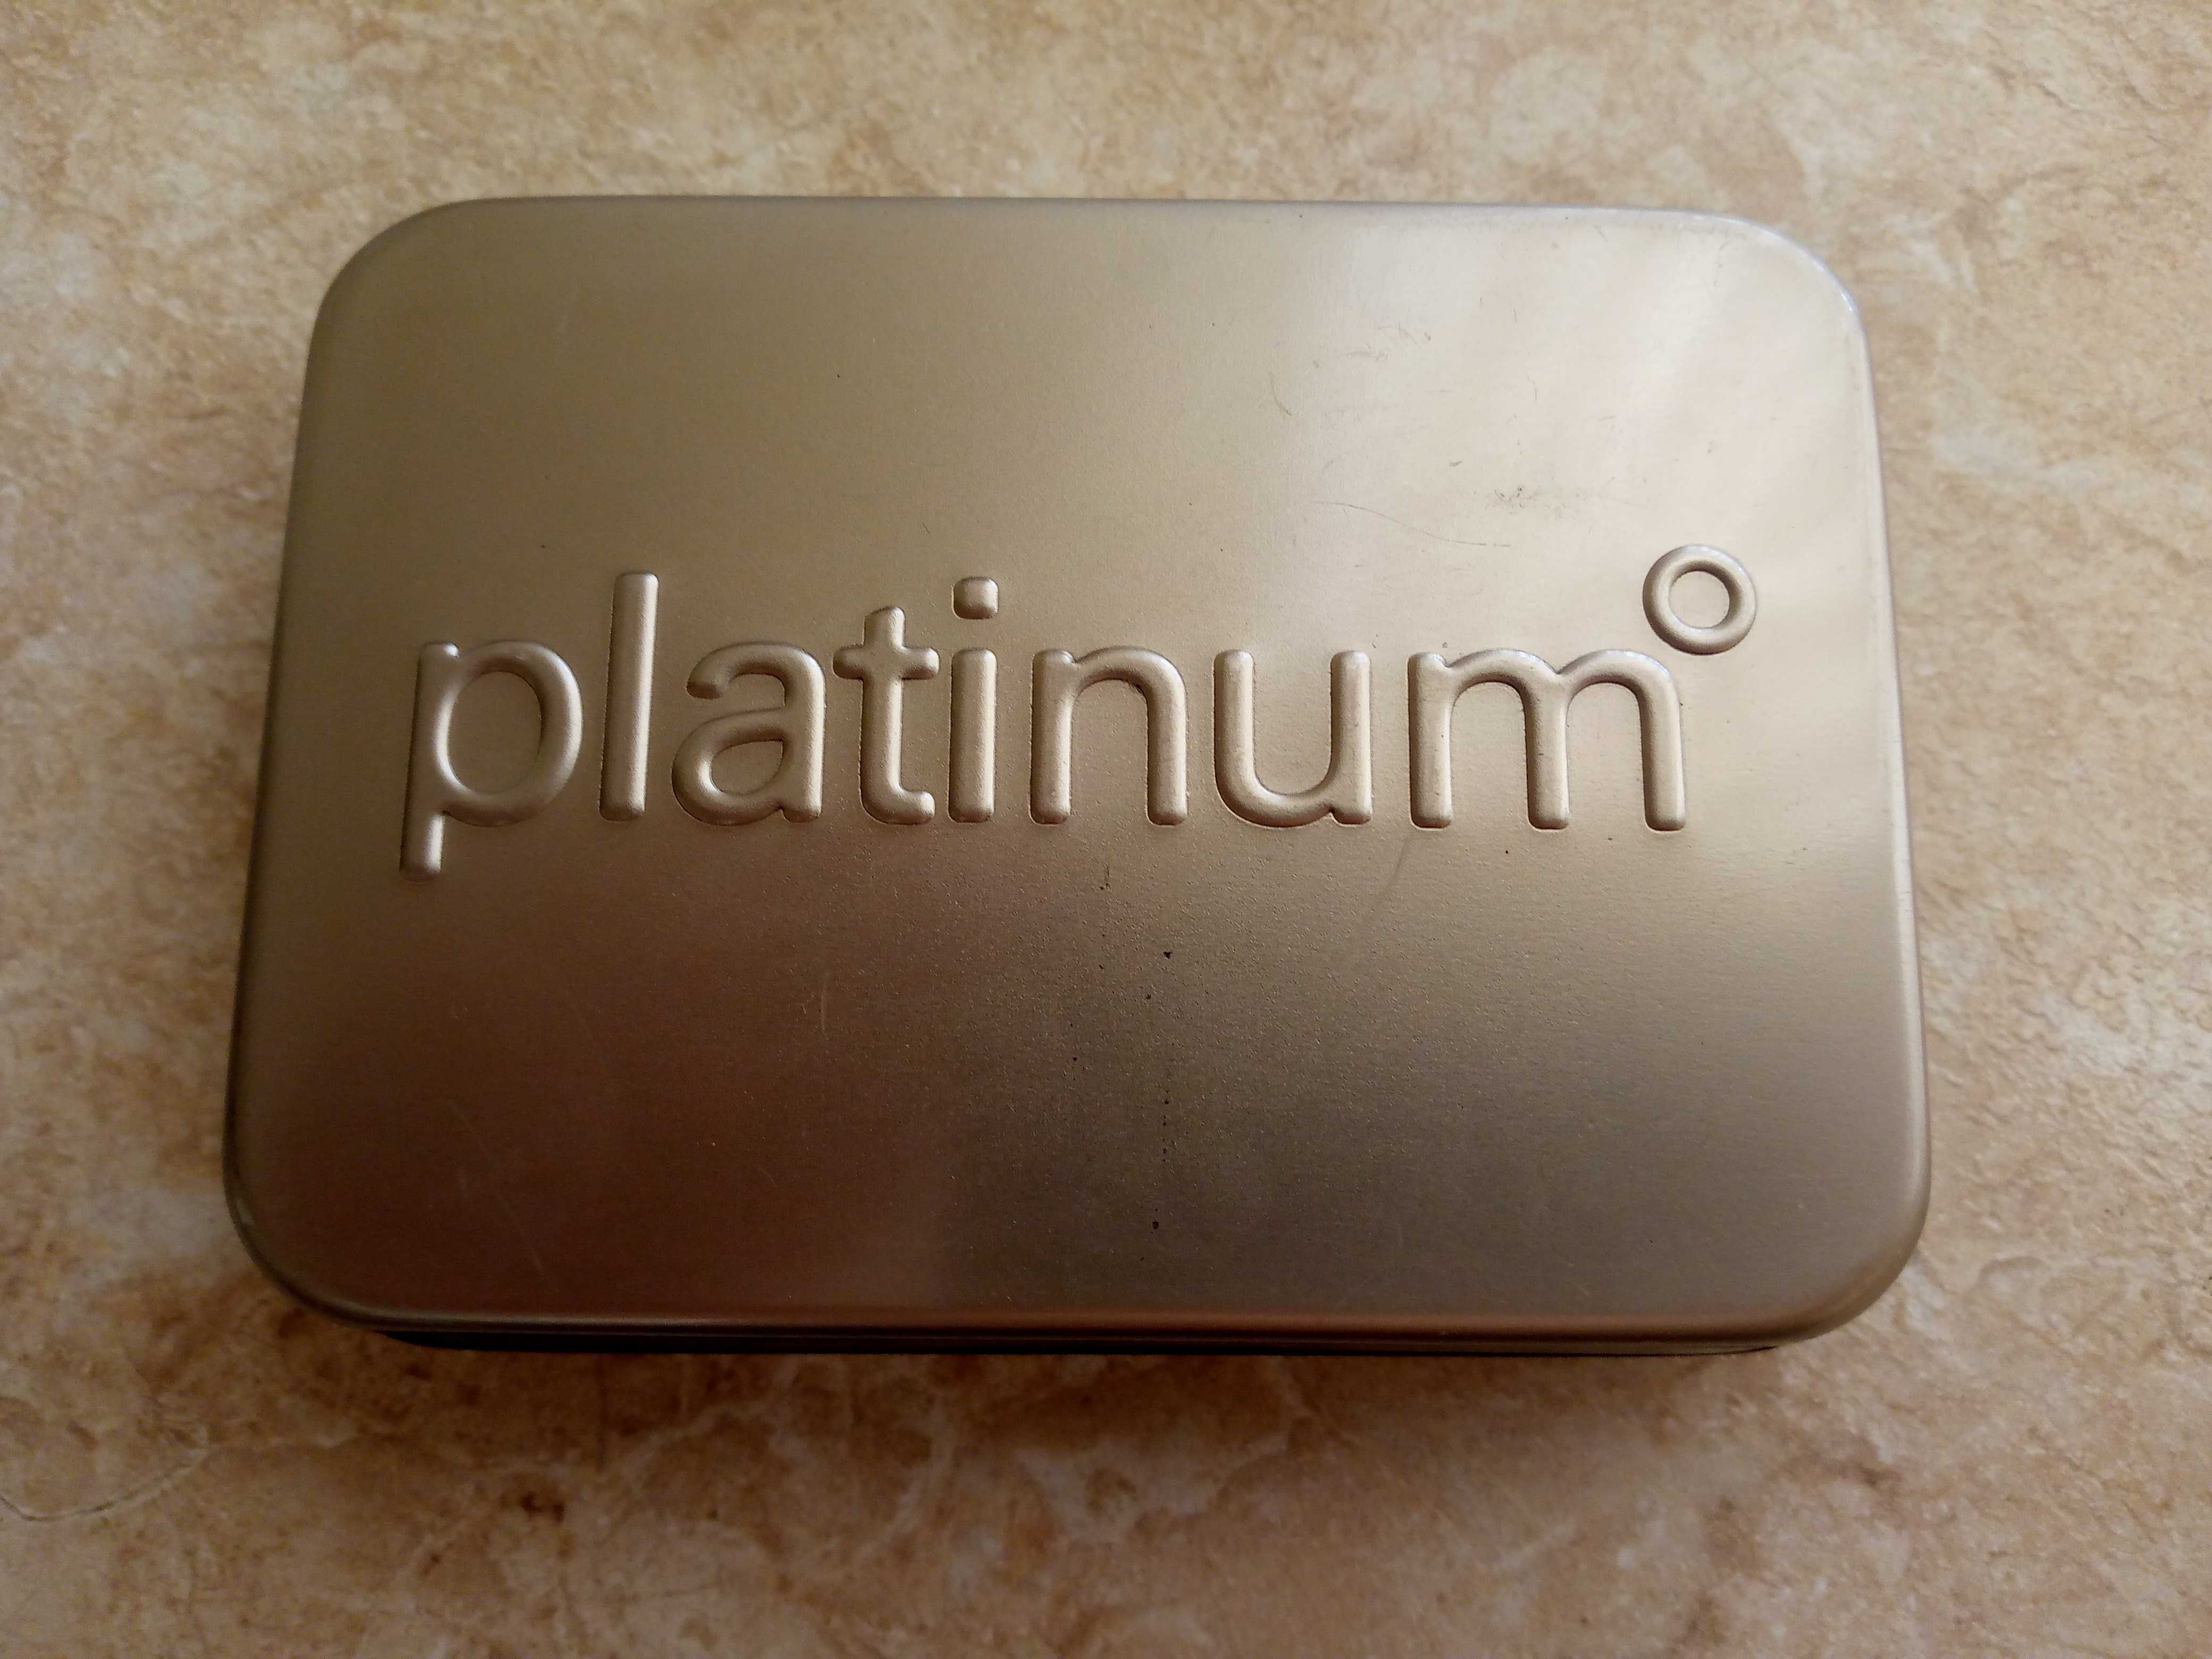 Набор аксессуаров Platinum(см фото).Цена 110 тыс